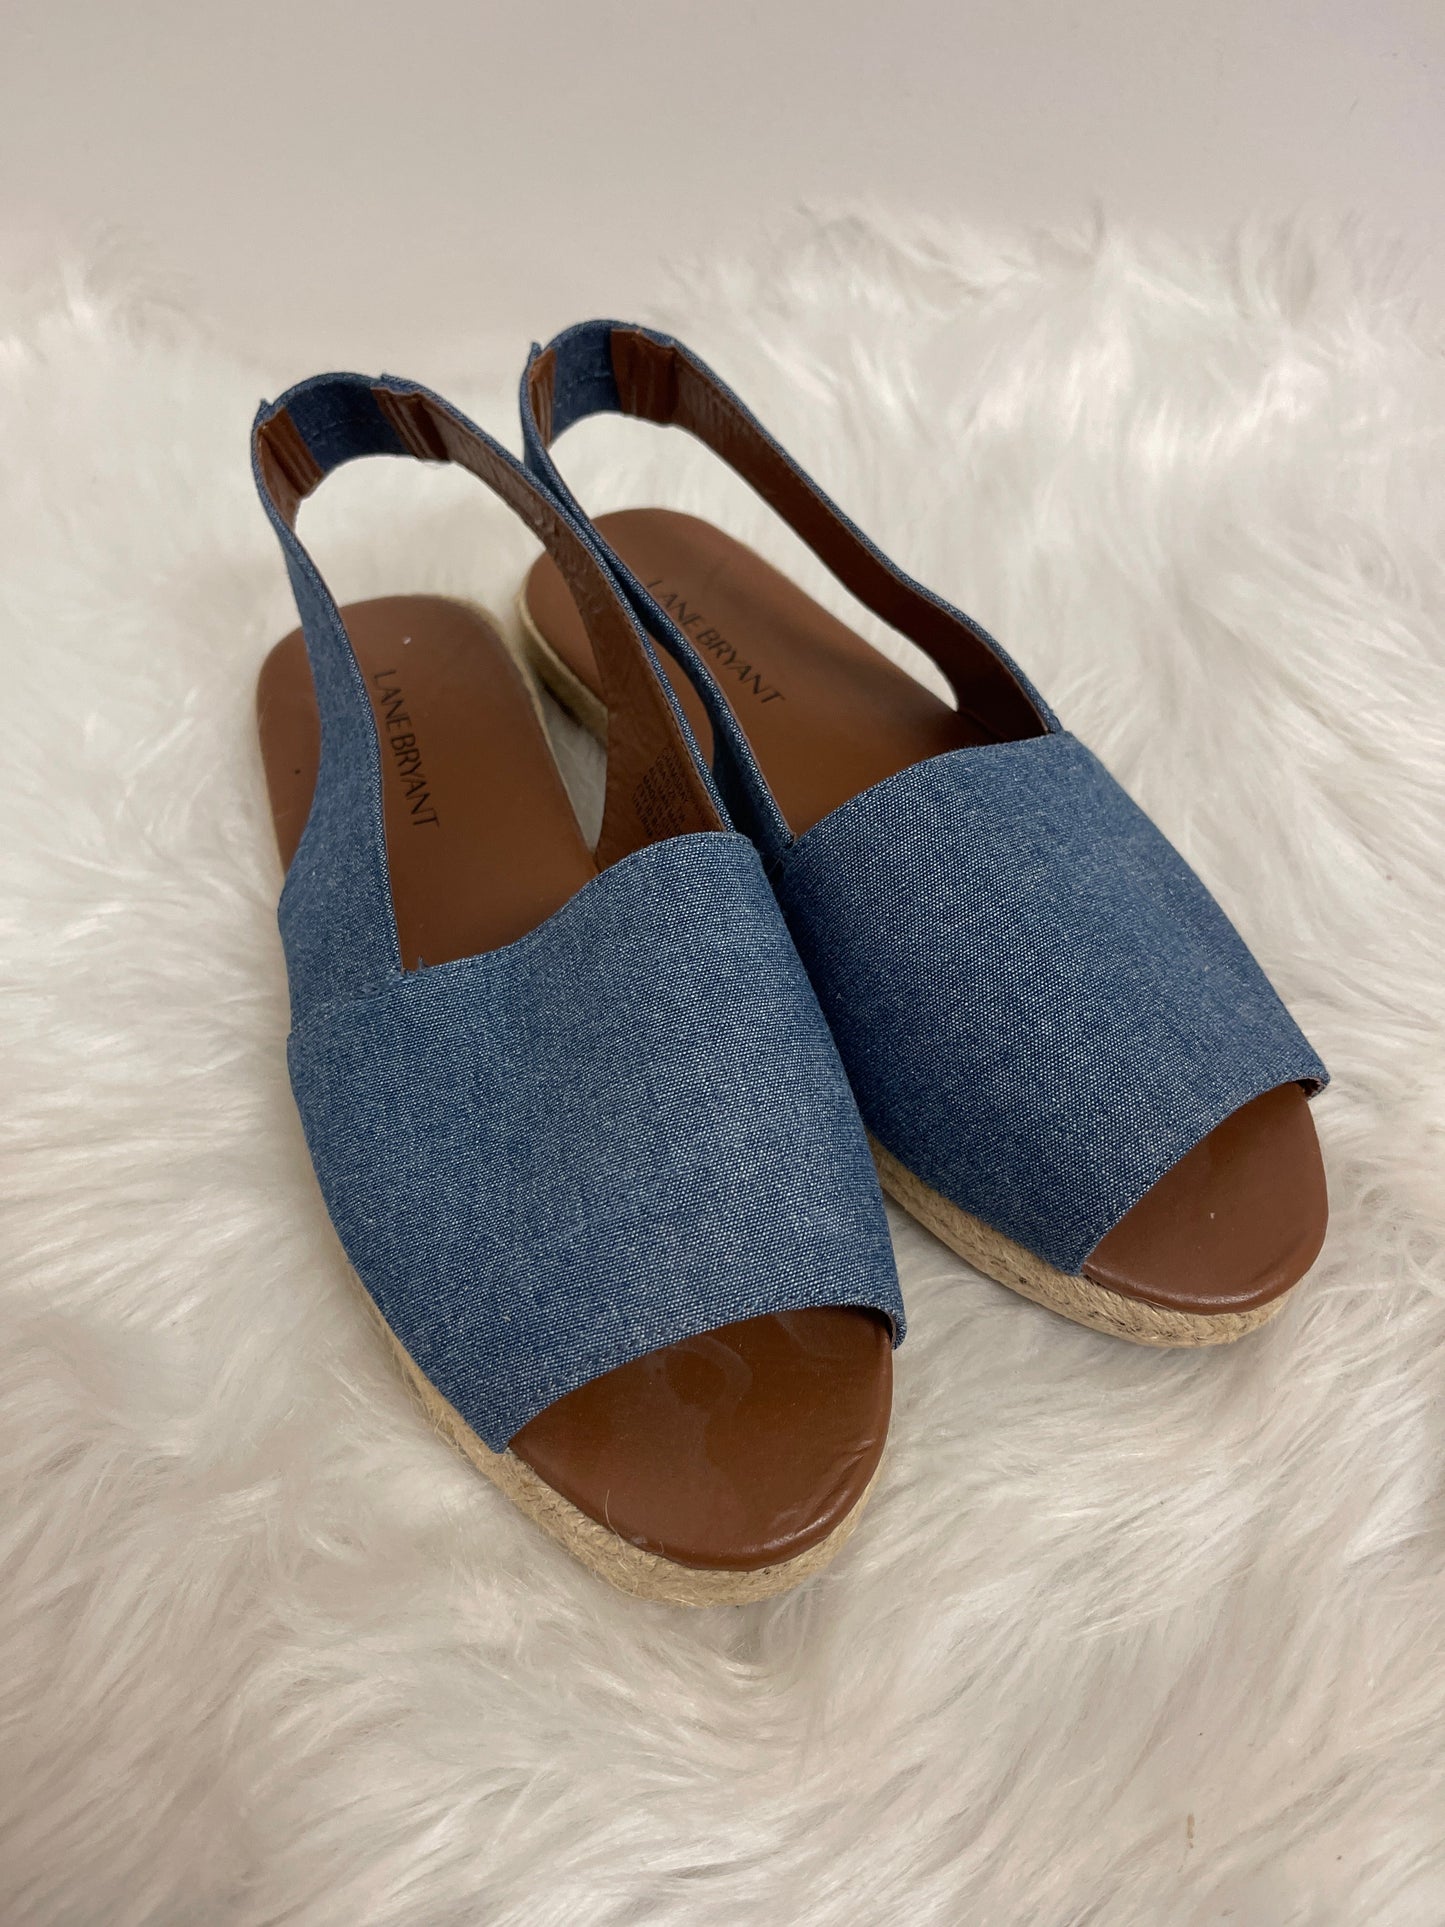 Blue Sandals Flats Lane Bryant, Size 7